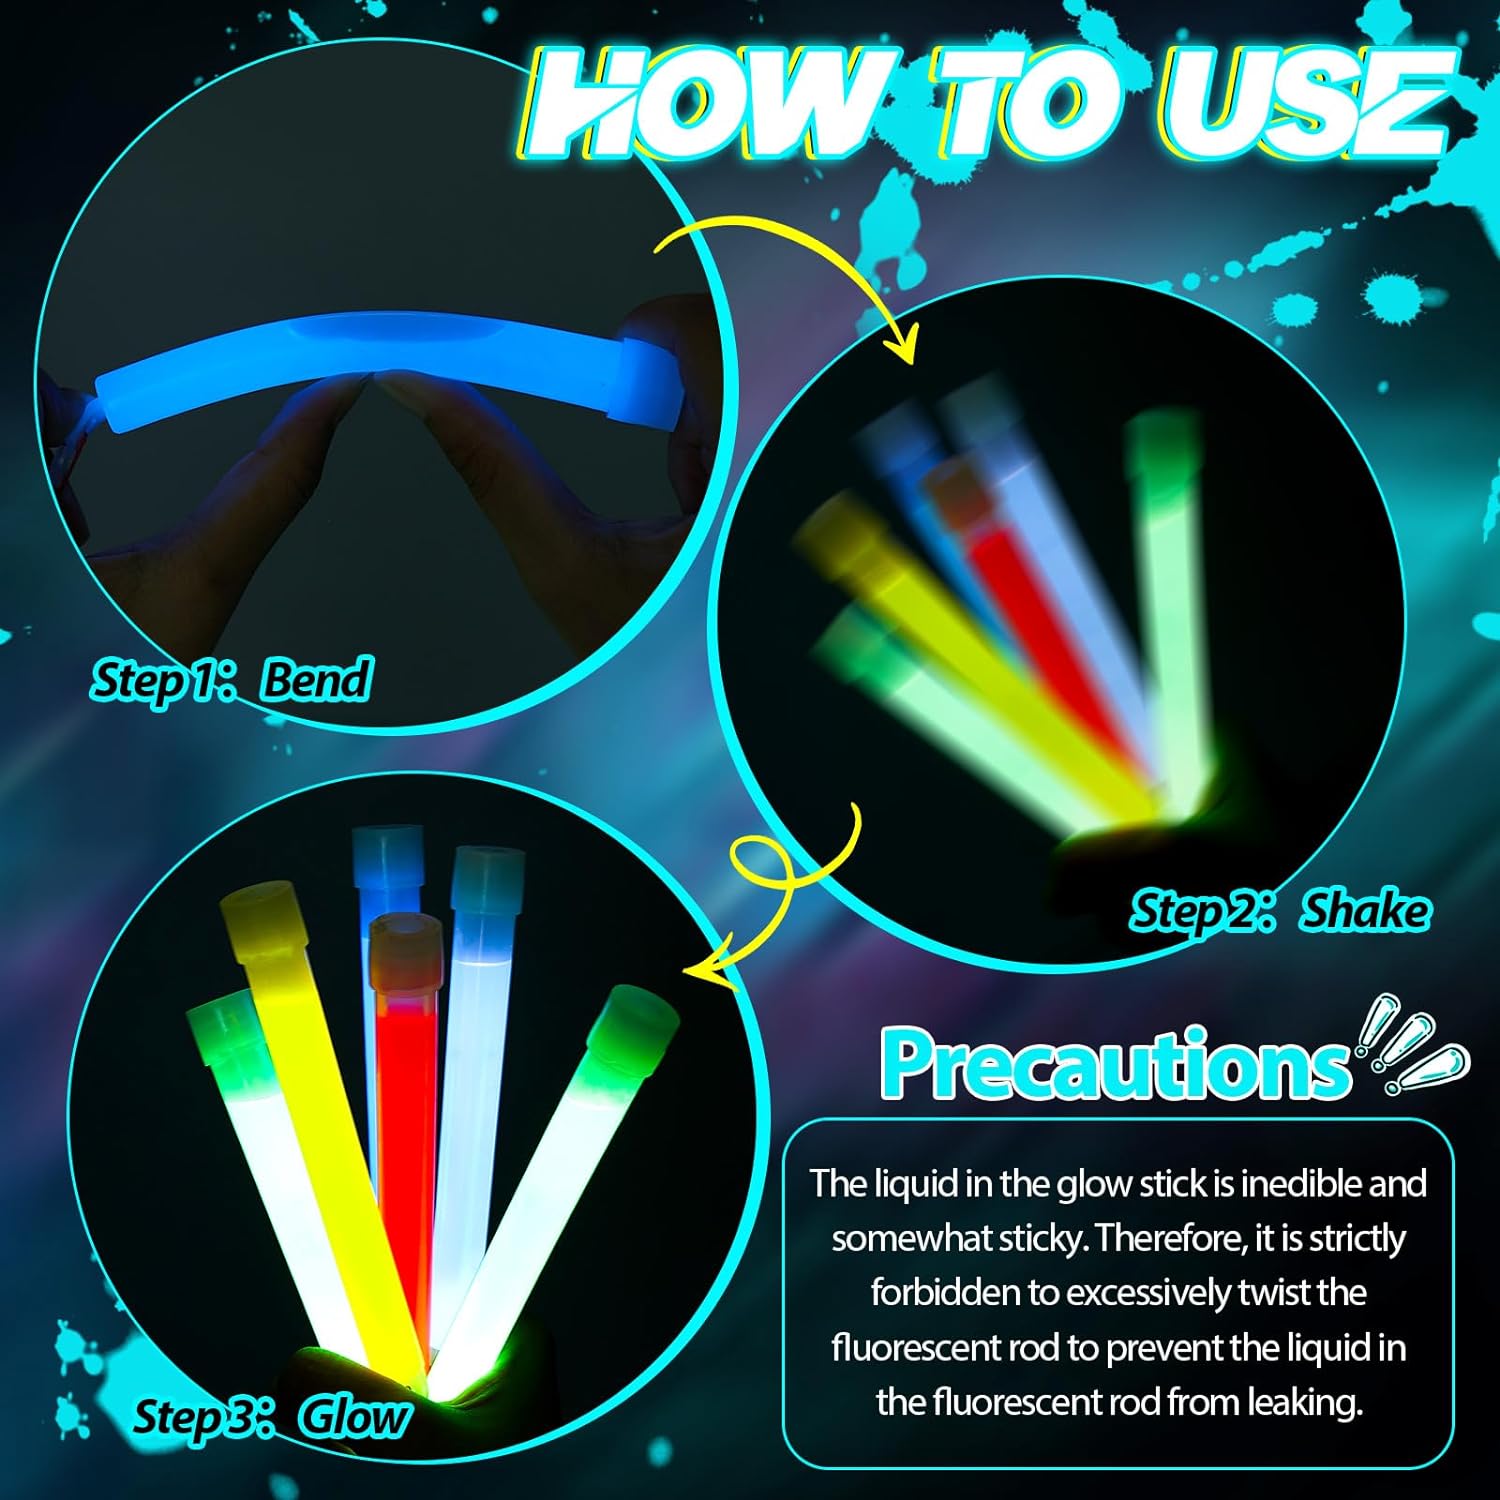 CLZ192 Karanlıkta Yanan Asılabilir ip Aparatlı Glow Stick Kolye Glow Stick Lamba 6 Adet 6 Renk 15 cm (4172)